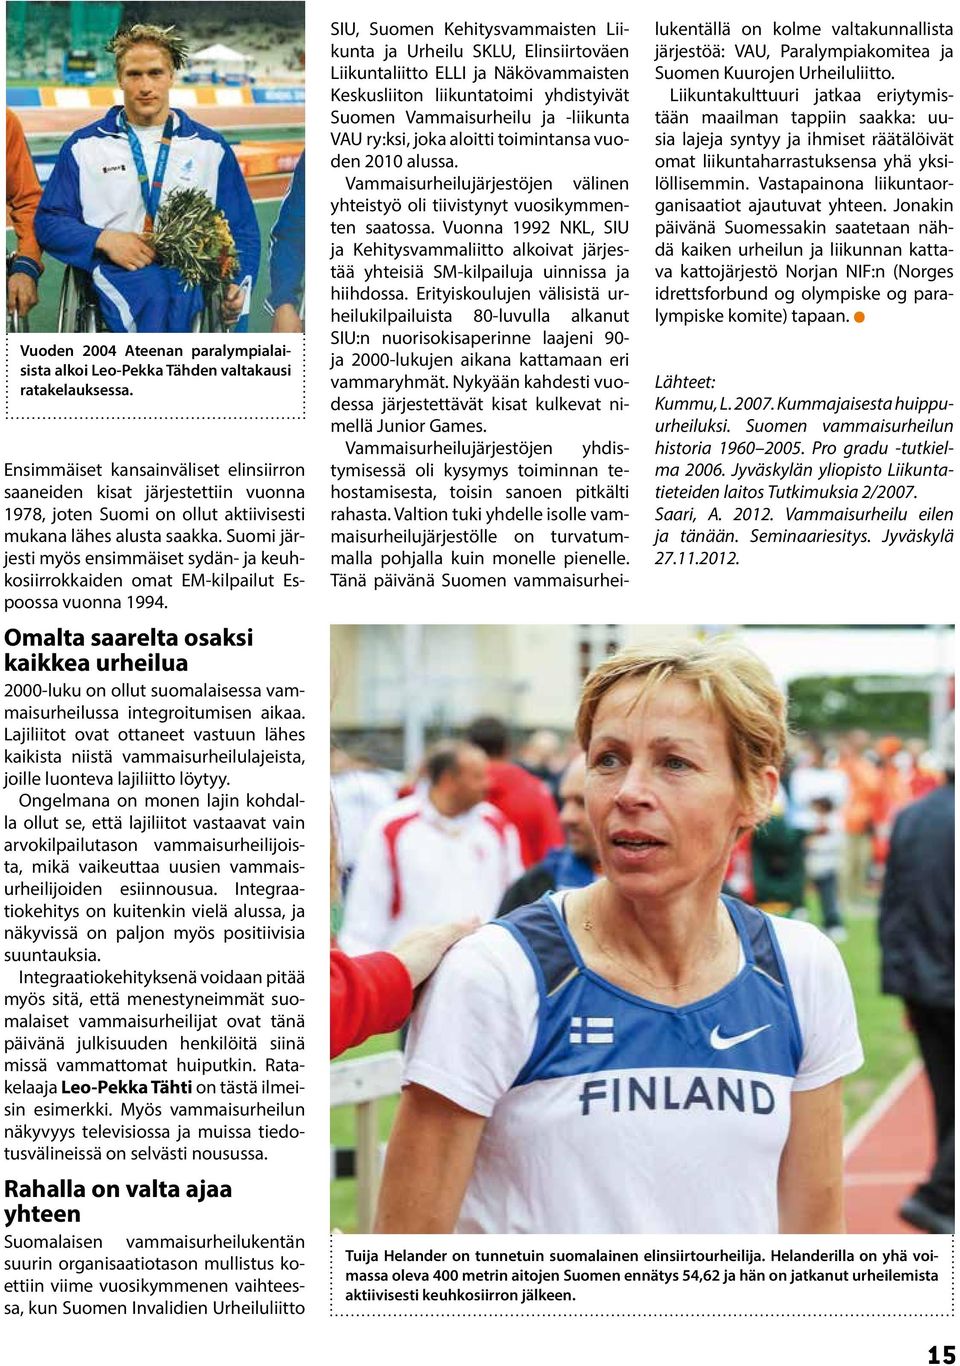 Suomi järjesti myös ensimmäiset sydän- ja keuhkosiirrokkaiden omat EM-kilpailut Espoossa vuonna 1994.